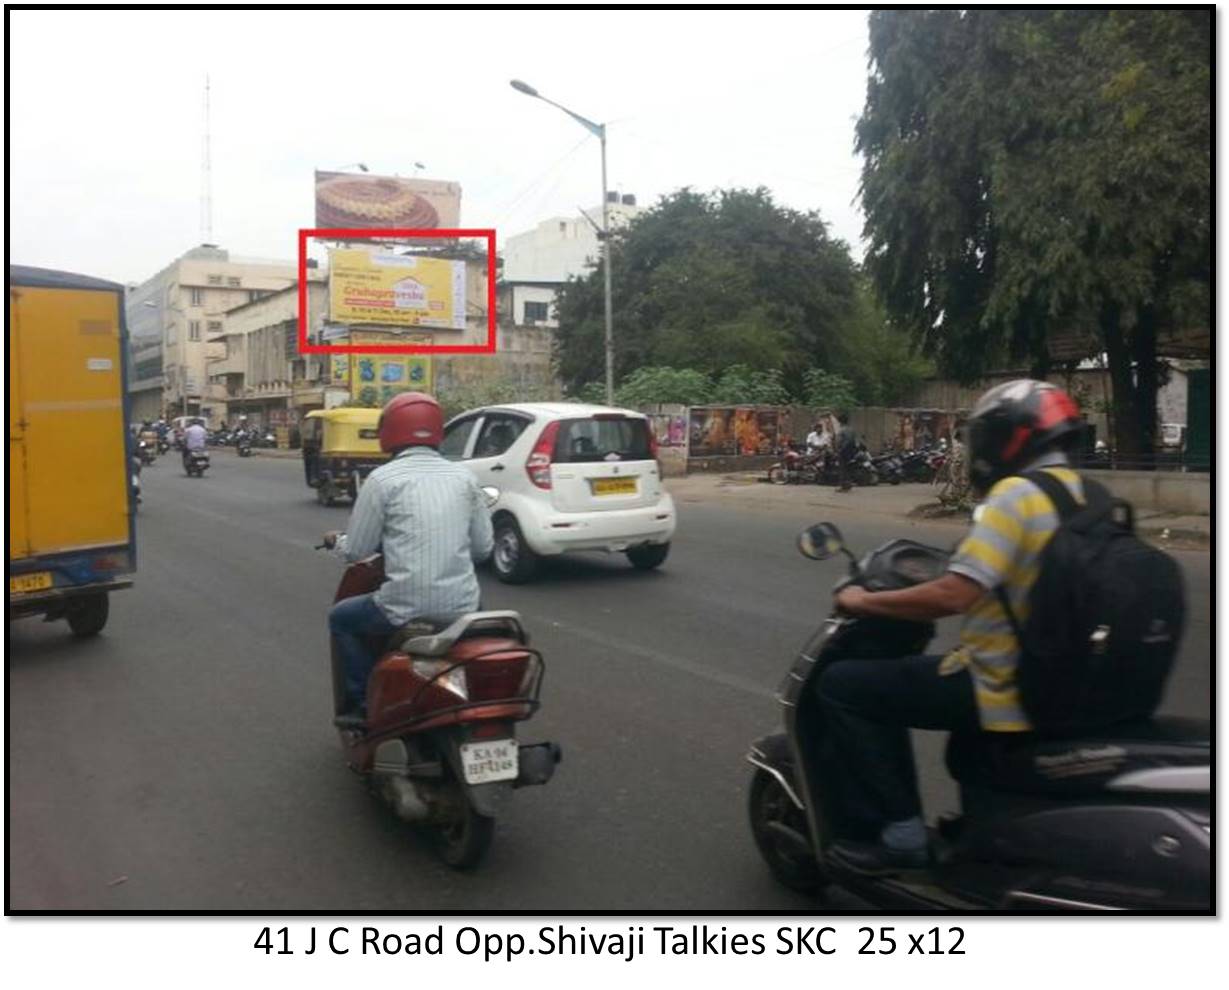 J C Road Opp.Shivaji Talkies, Bengaluru